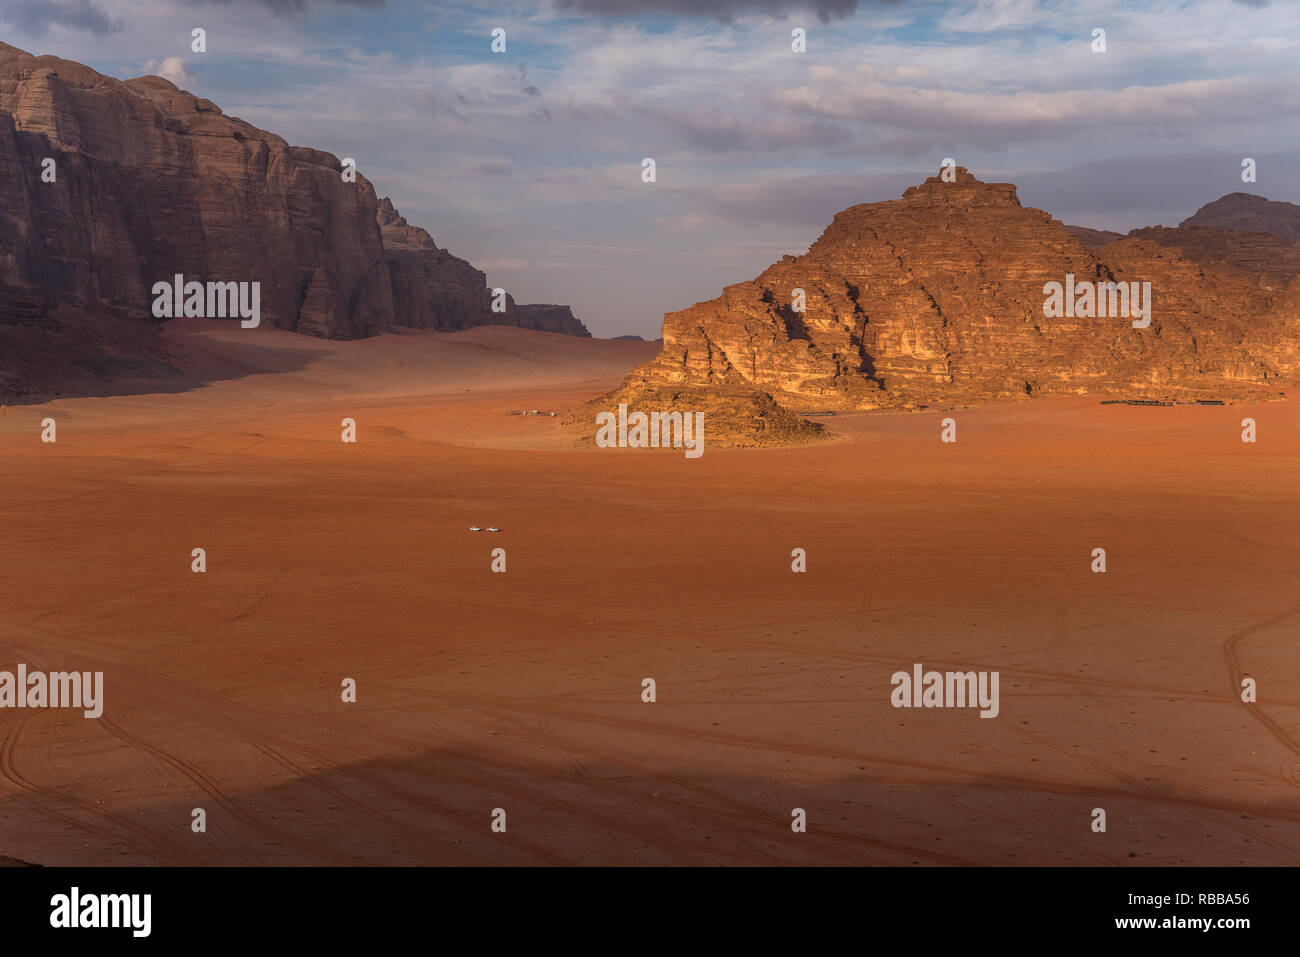 Landschaft mit Felsen in der Wüste Wadi Rum, Jordanien, Asien  |  landscape with rocks in the desert Wadi Rum, Jordan, Asia Stock Photo